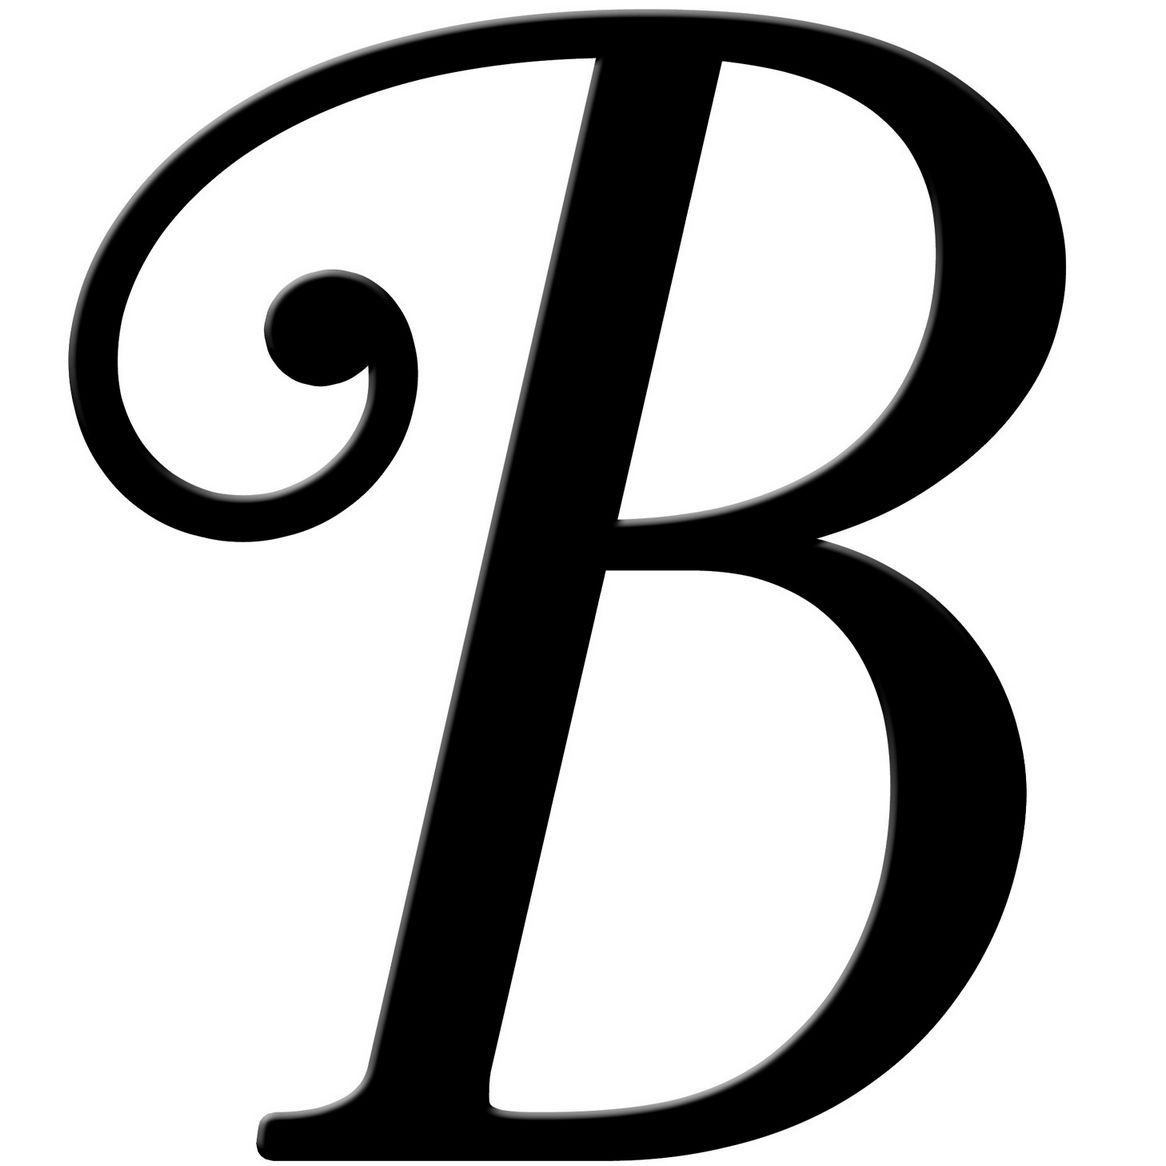 5 Best Images of Fancy Cursive B - Fancy Cursive Letter B, Cursive ...